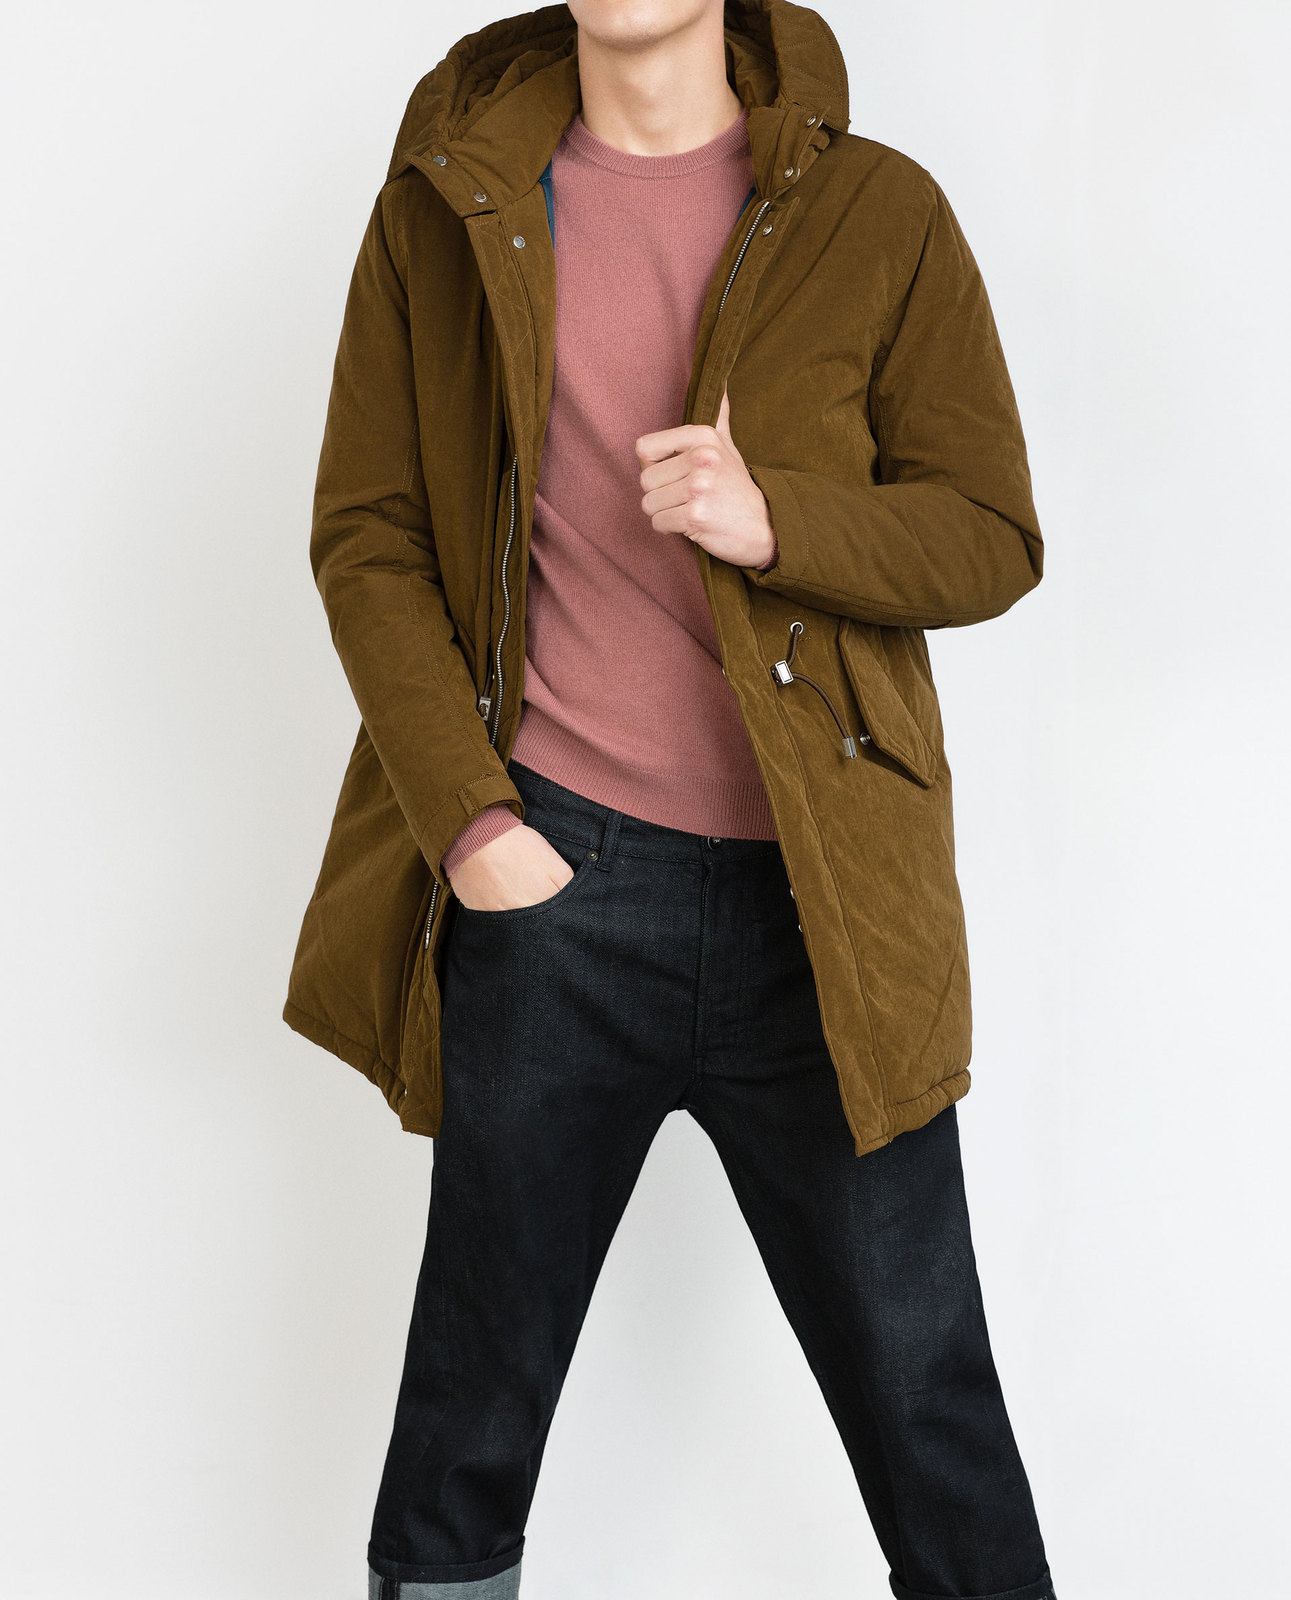 Zara barna férfi télikabát 2015.10.15 #89034 fotója